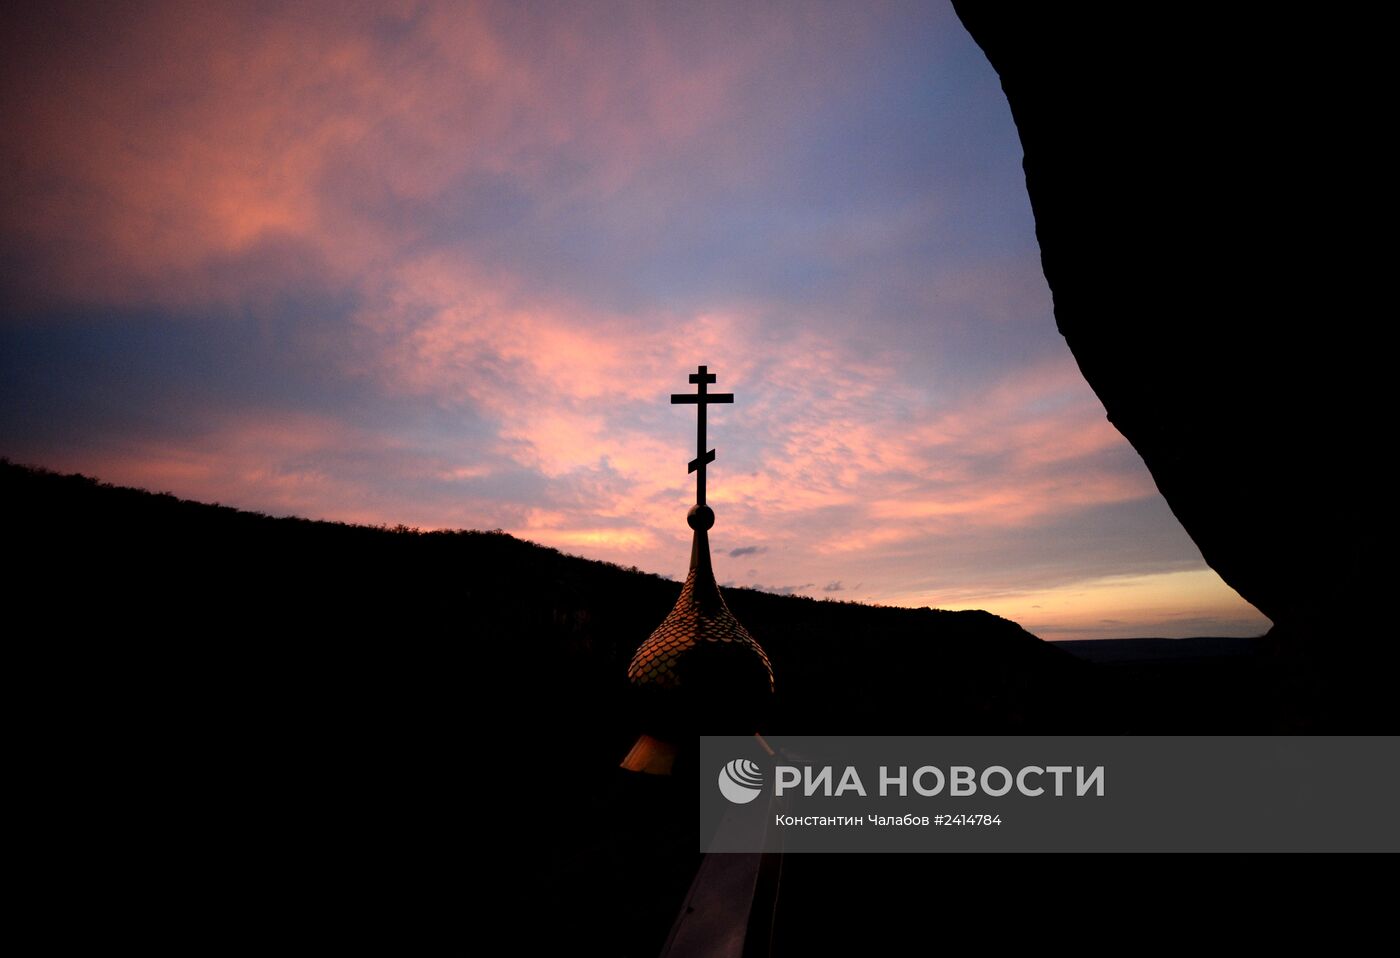 Празднование Пасхи в скальном монастыре Феодора Стратилата в Крыму